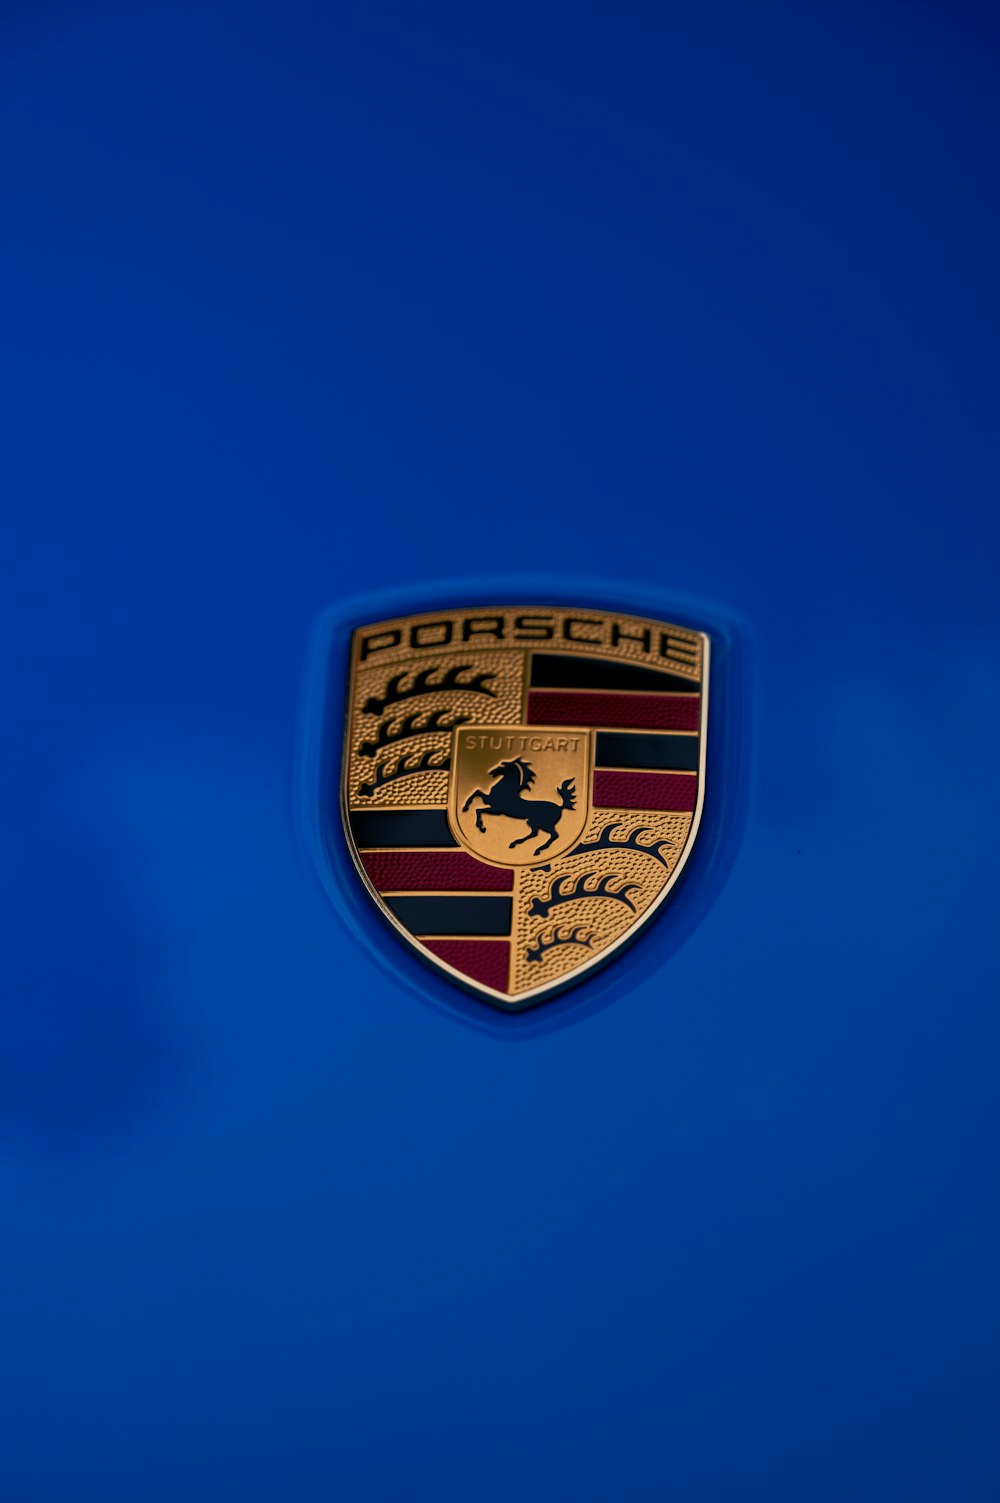 Un primo piano dell'emblema di un'auto su sfondo blu